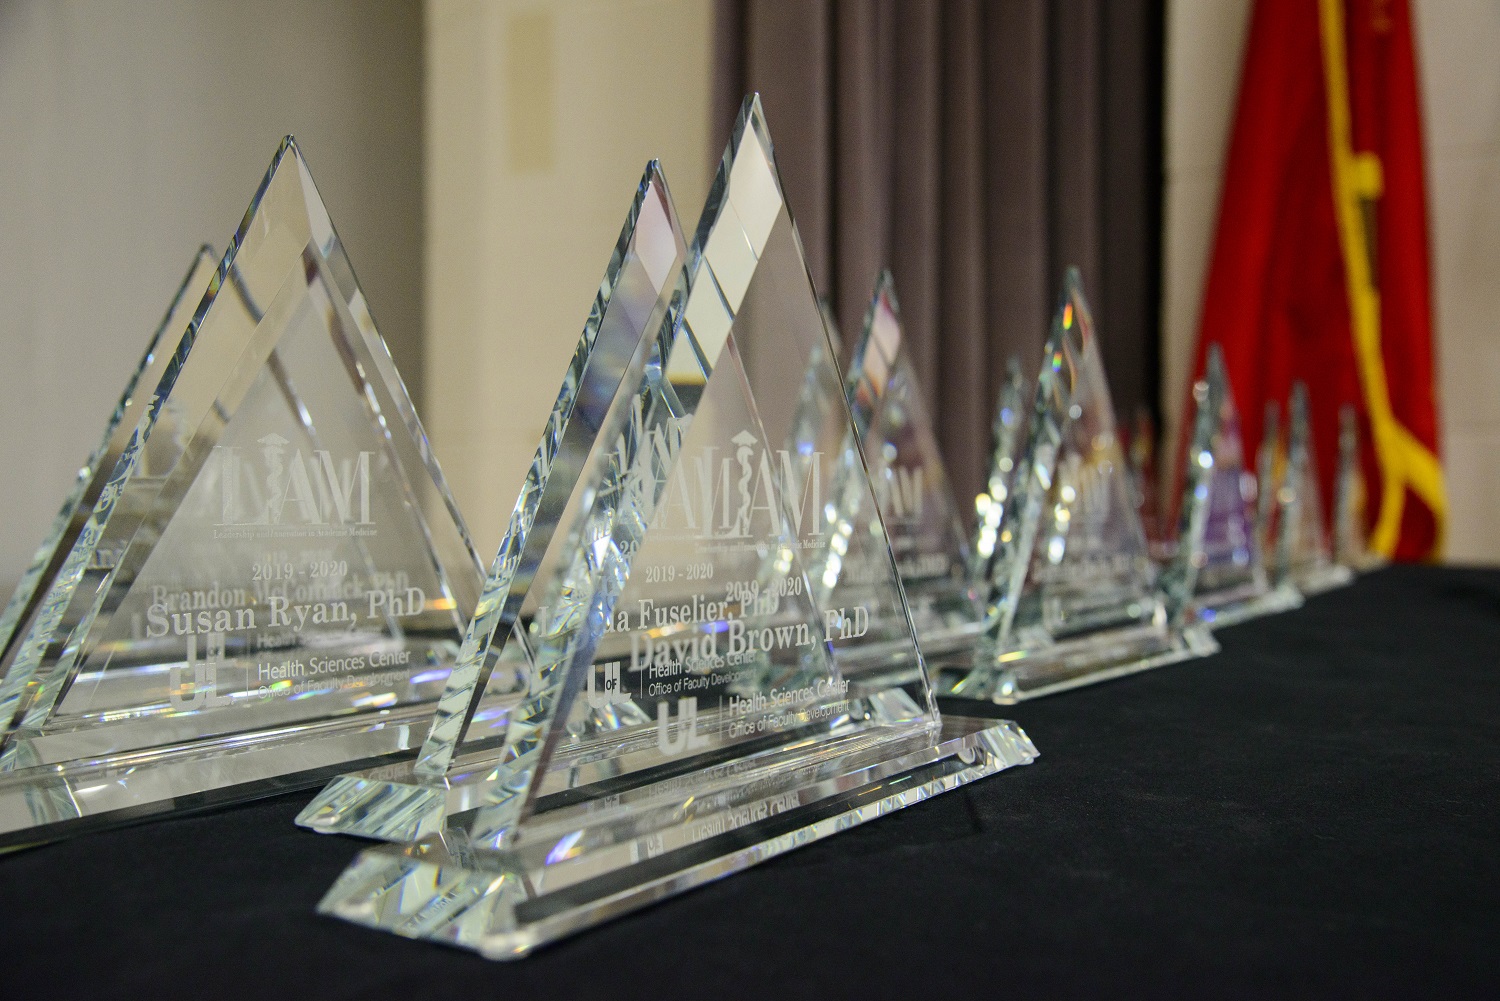 Awards presented to LIAM graduates